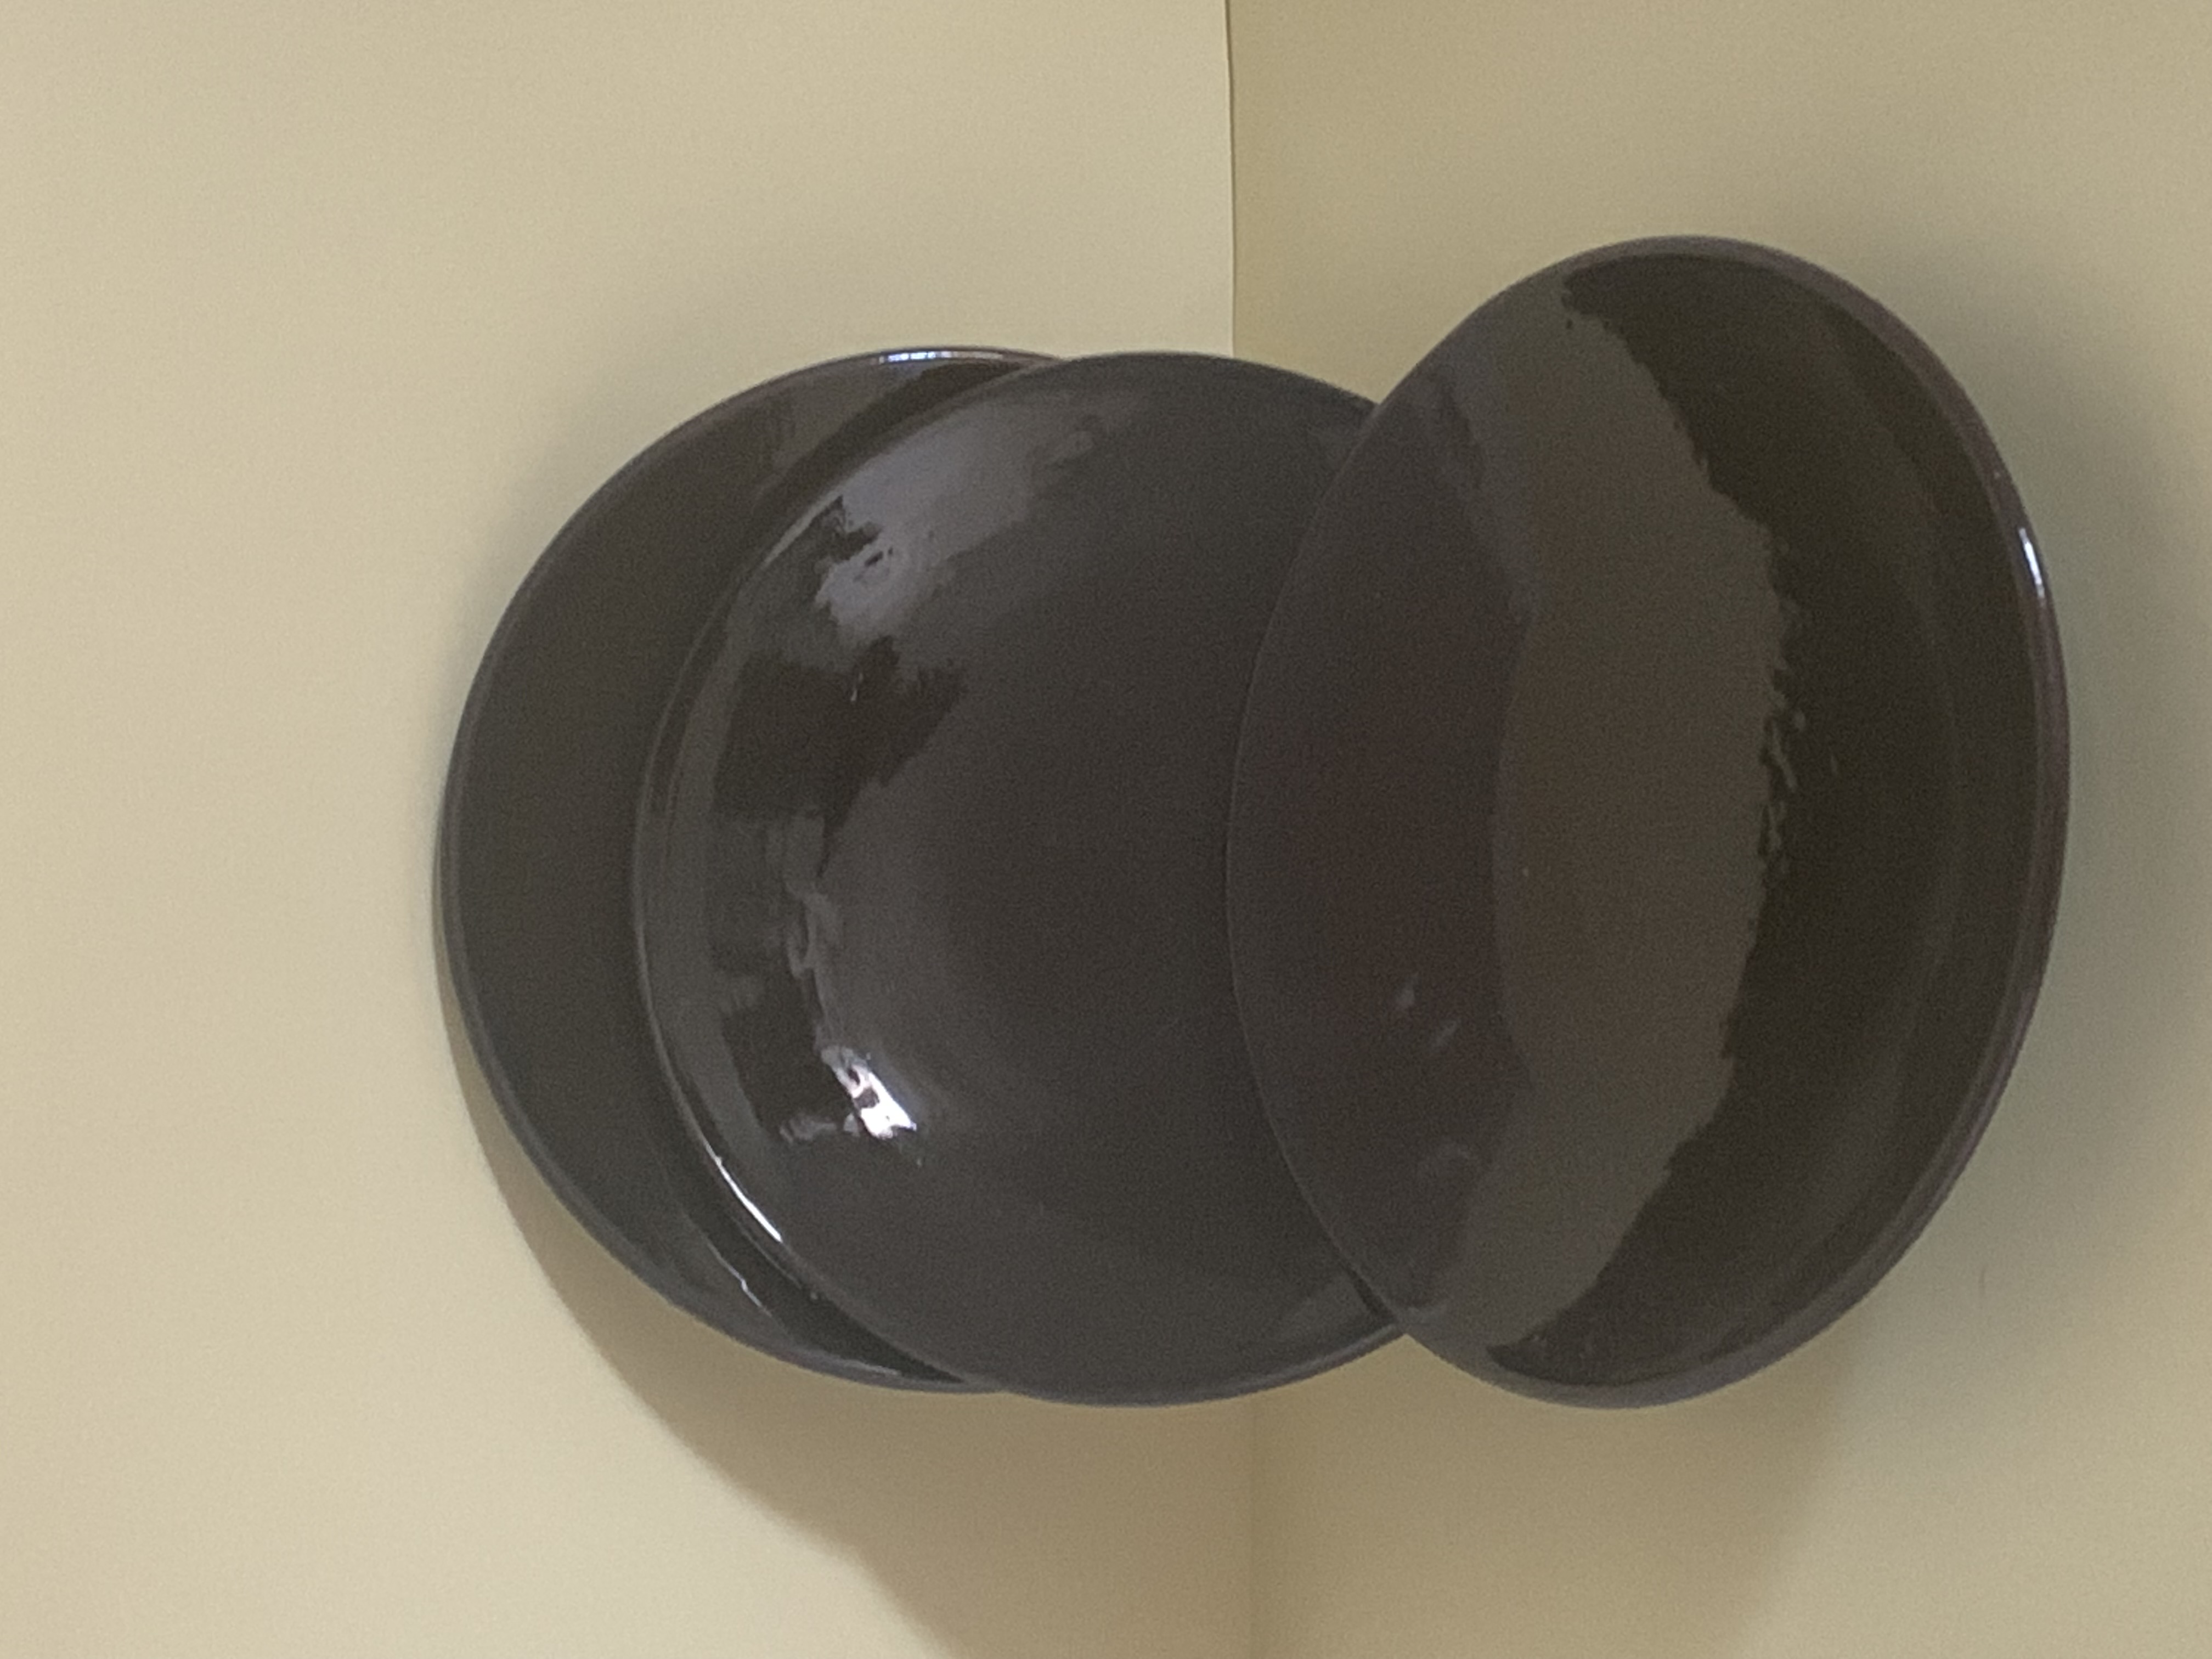  earthenware bowls